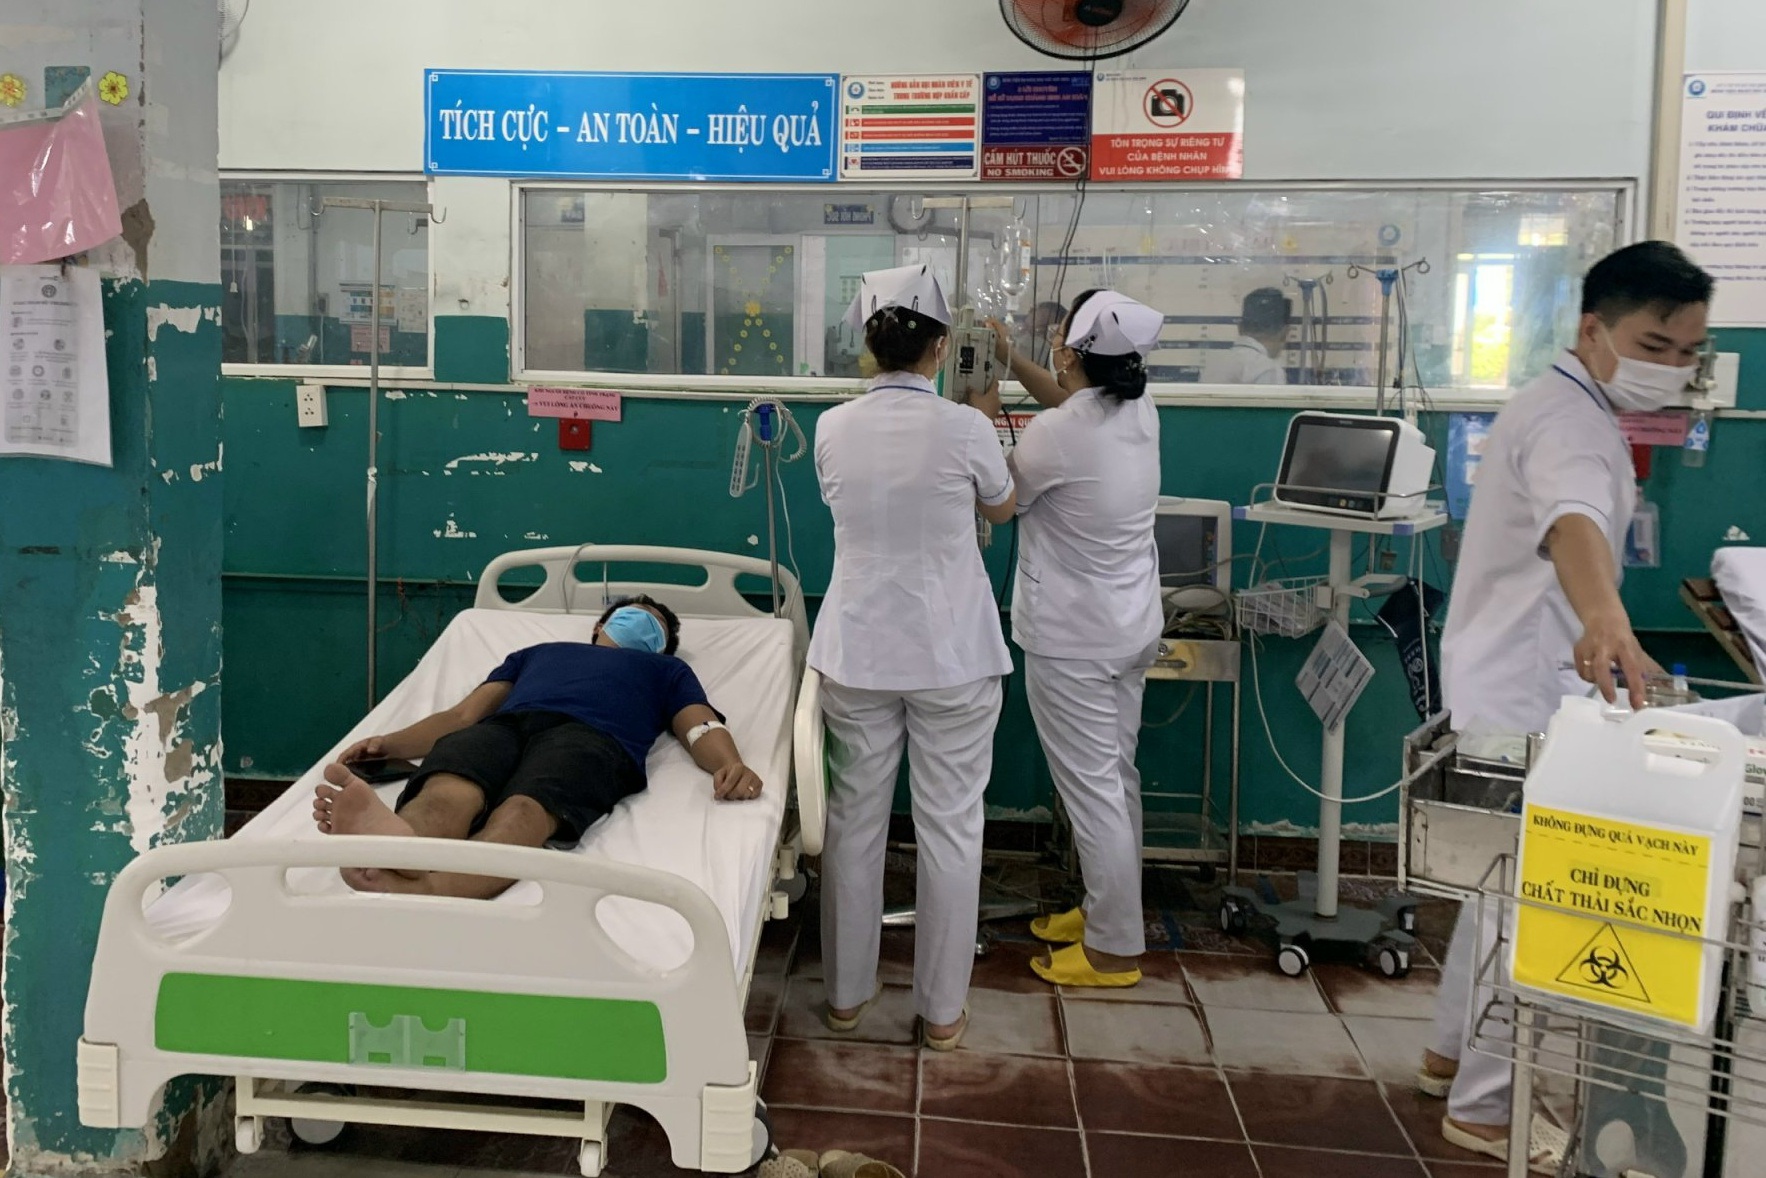 Mưa ngập bệnh viện ở TPHCM, bác sĩ bắt cua trong phòng cấp cứu - 4